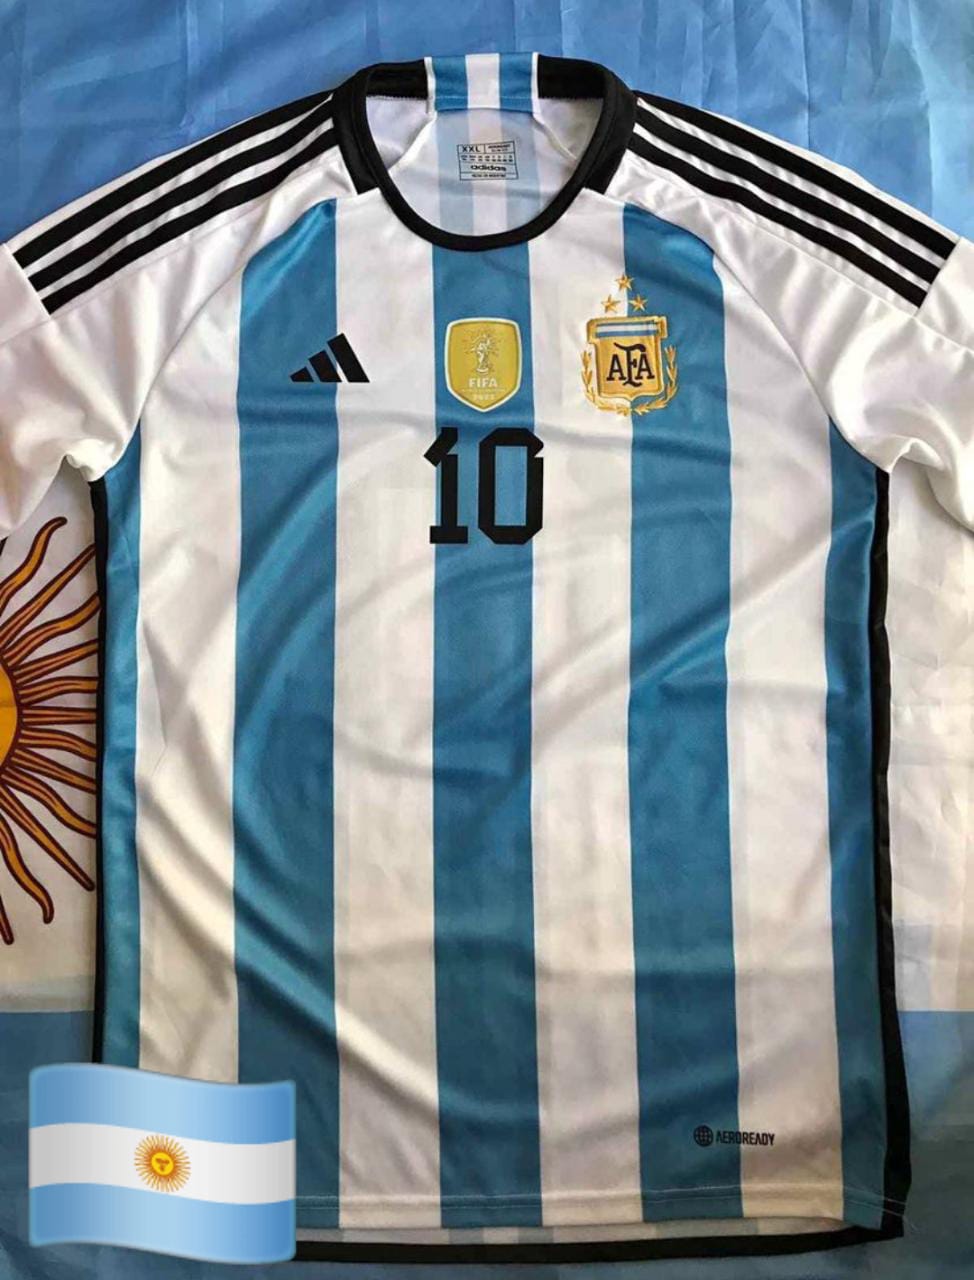 Camiseta Argentina 3 estrellas Titular Replica 10 Messi Argentina4you